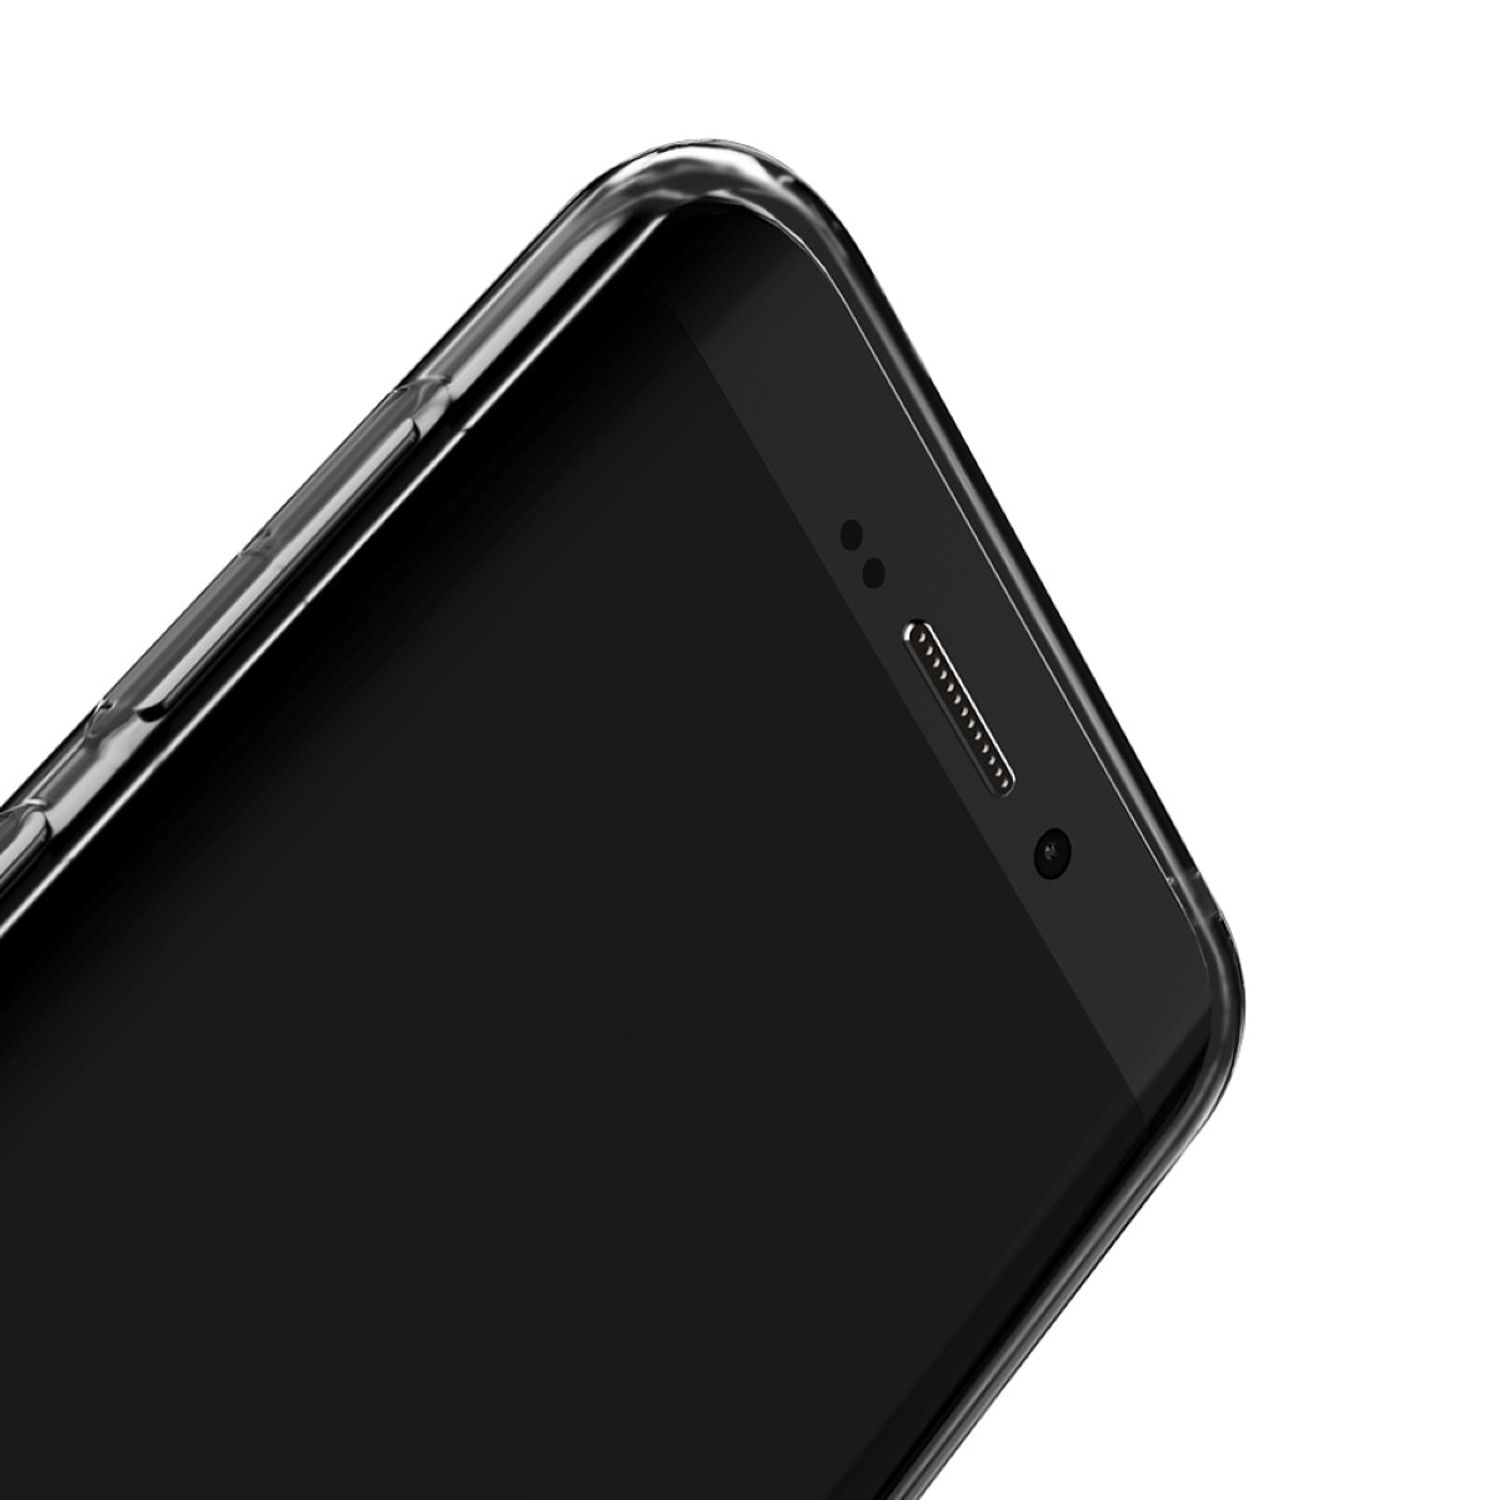 Samsung, Handyhülle Transparent Bumper, KÖNIG Galaxy Dünn Backcover, Ultra DESIGN S8,